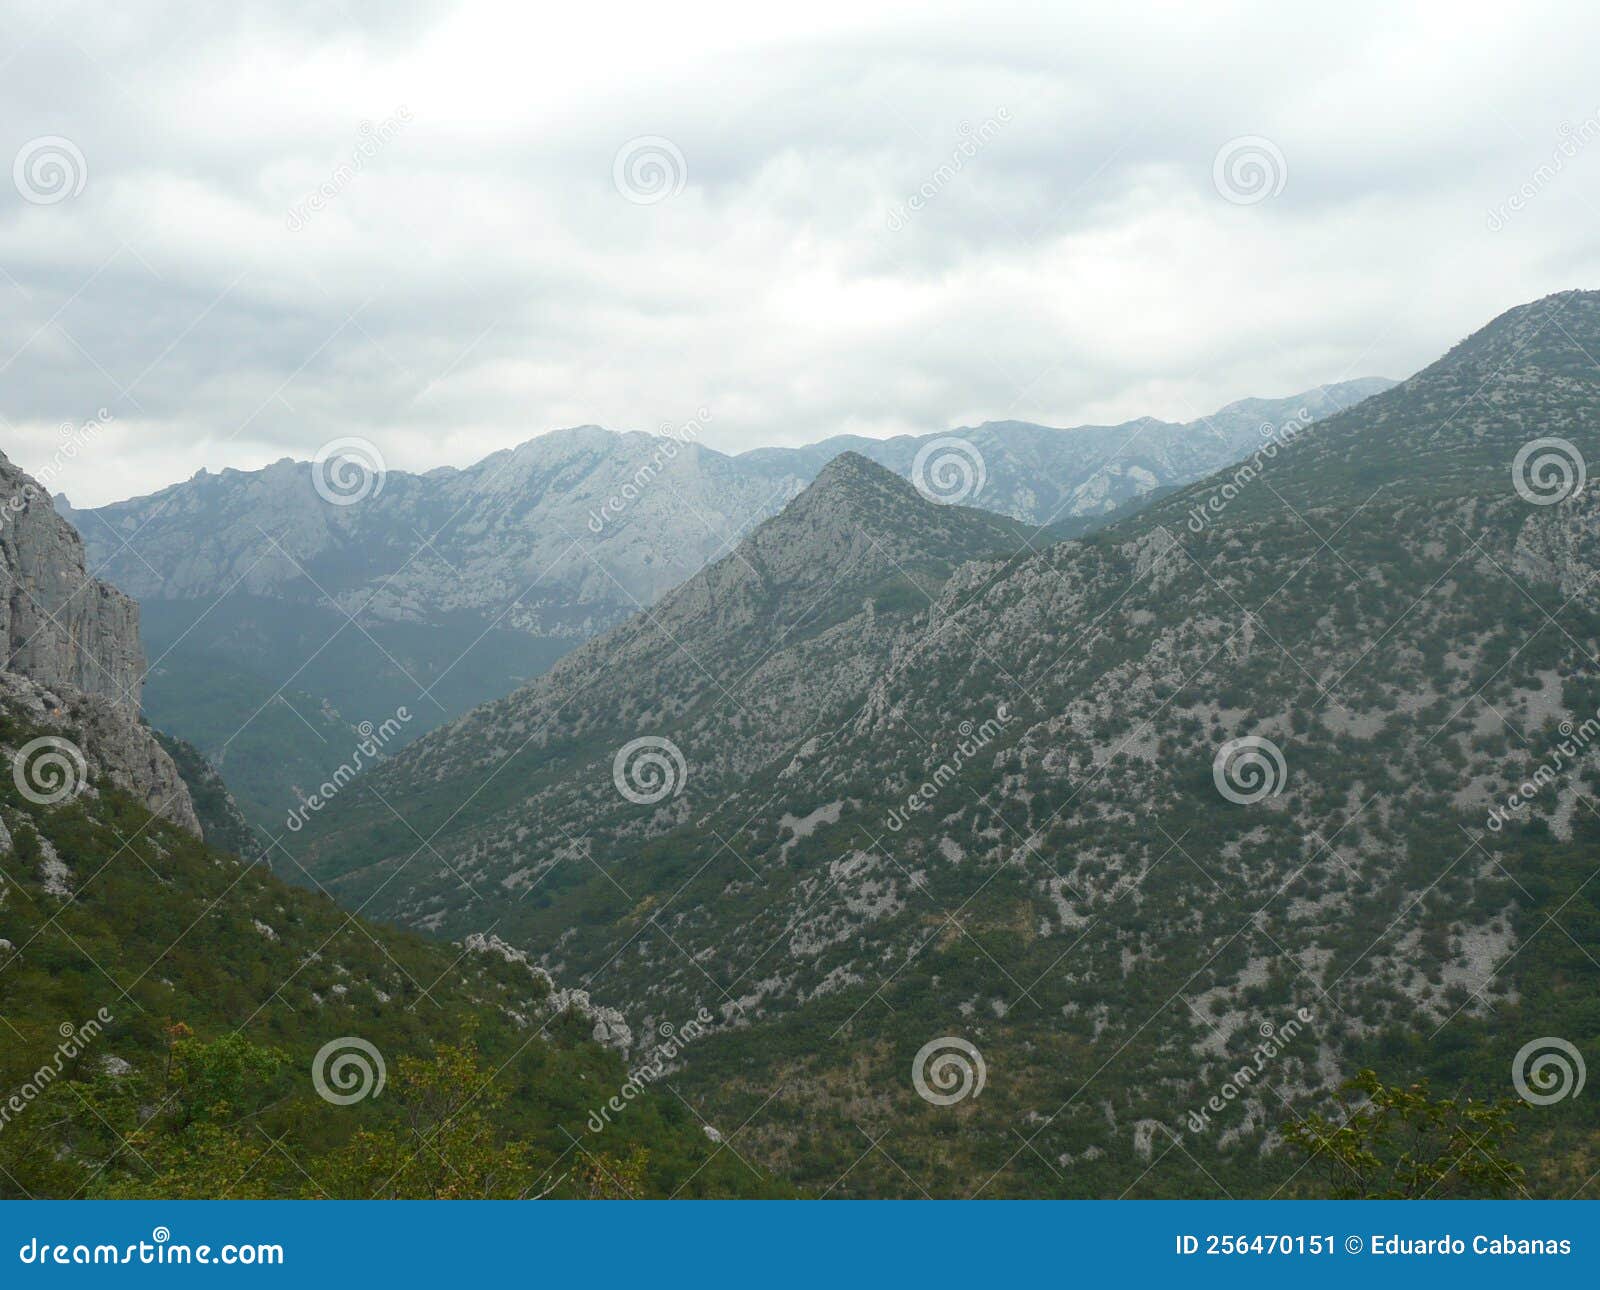 68 5.000 resultados de traducciÃÂ³n landscape of the mountains of paklenica national park in croatia